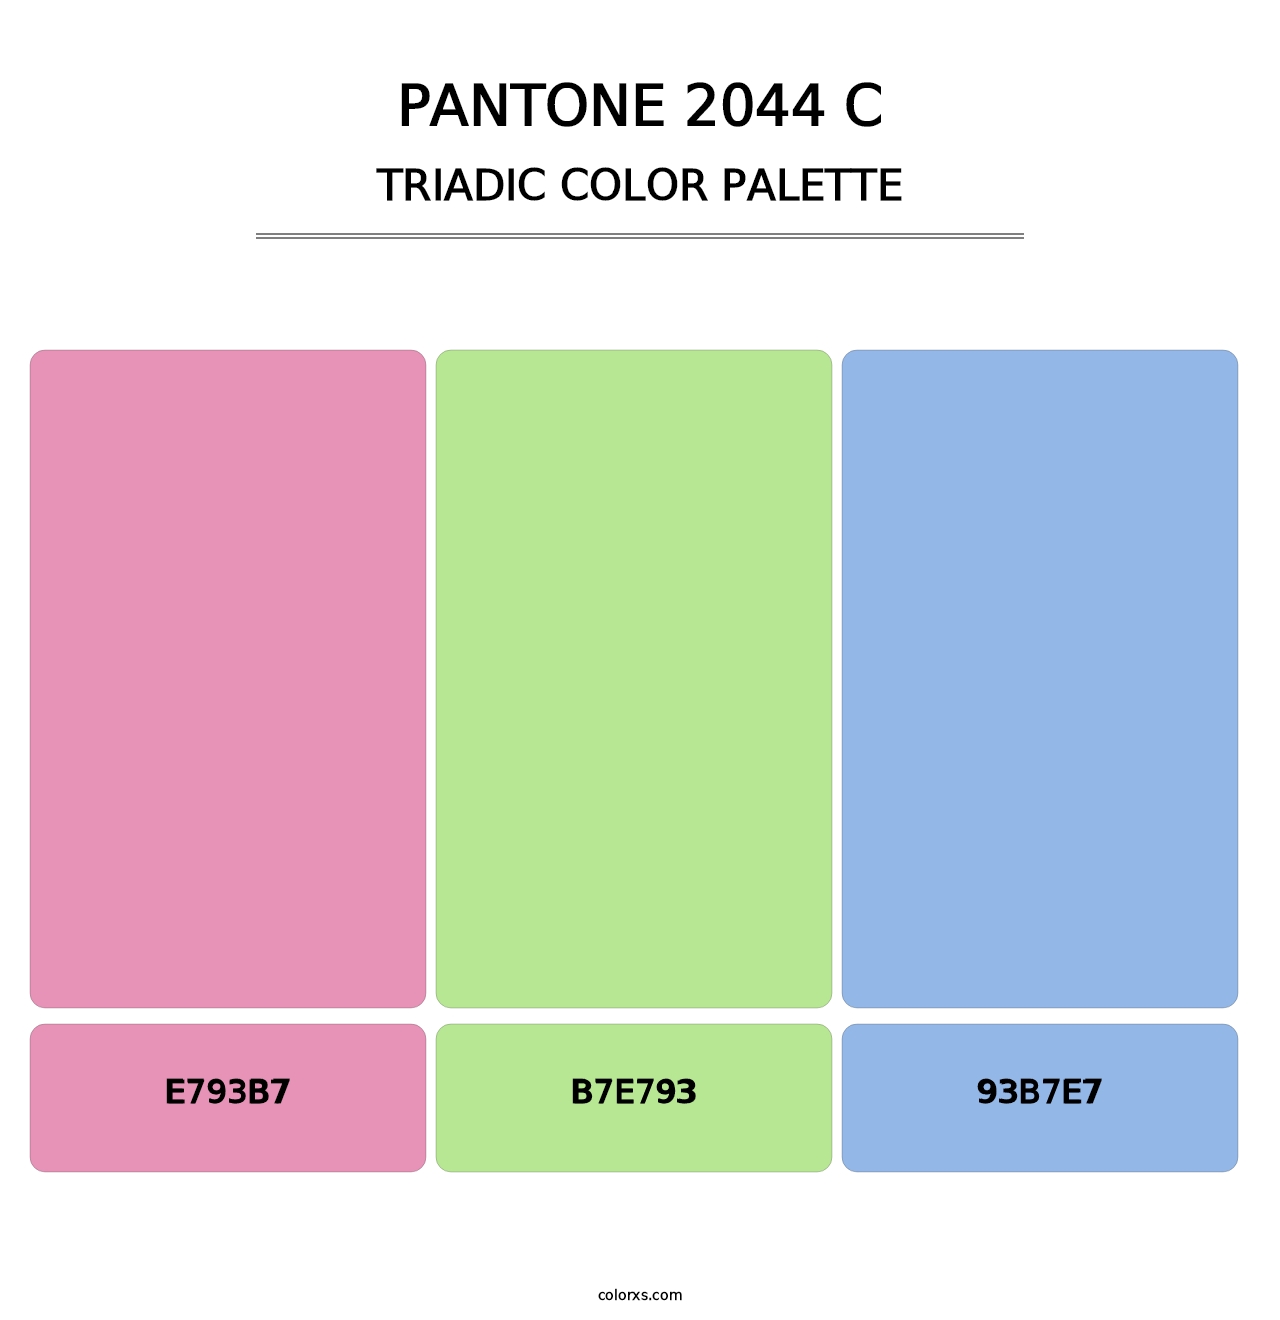 PANTONE 2044 C - Triadic Color Palette